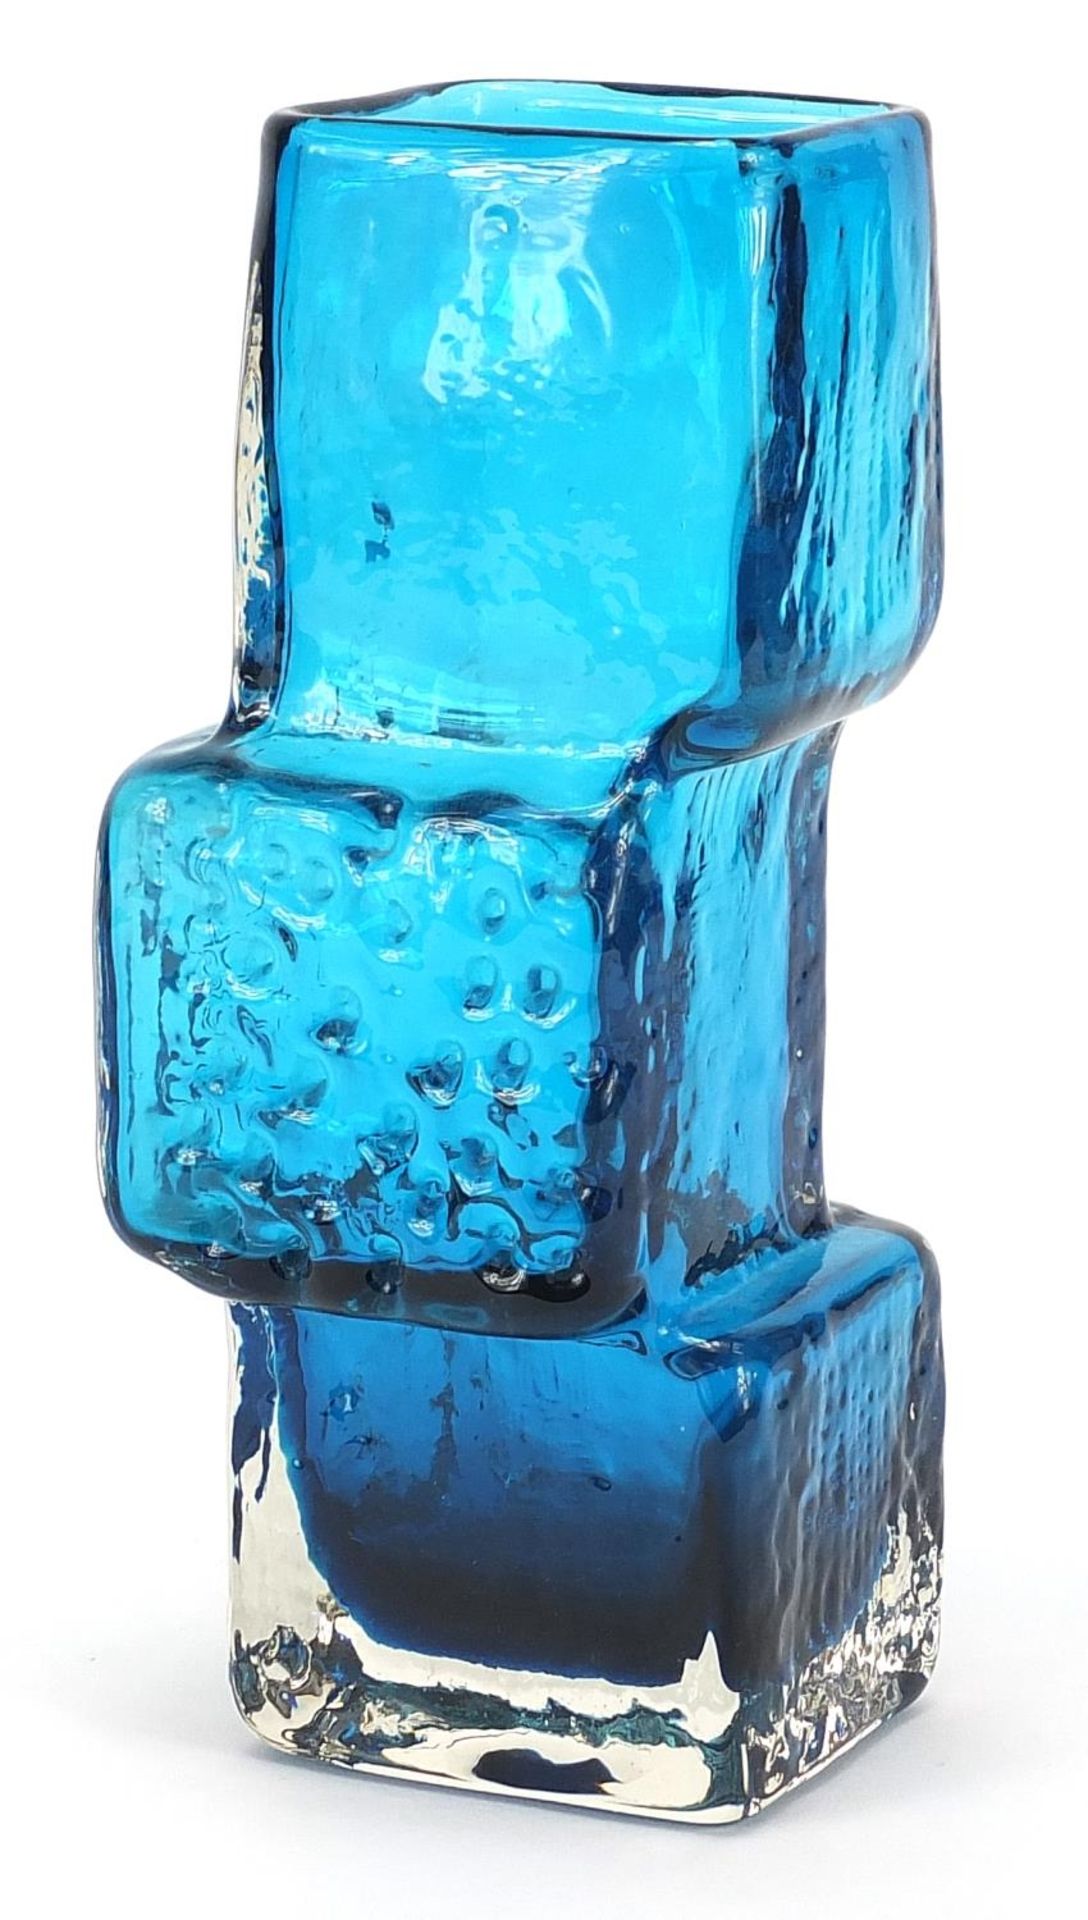 Geoffrey Baxter for Whitefriars, drunken bricklayer glass vase in kingfisher blue, 21cm high